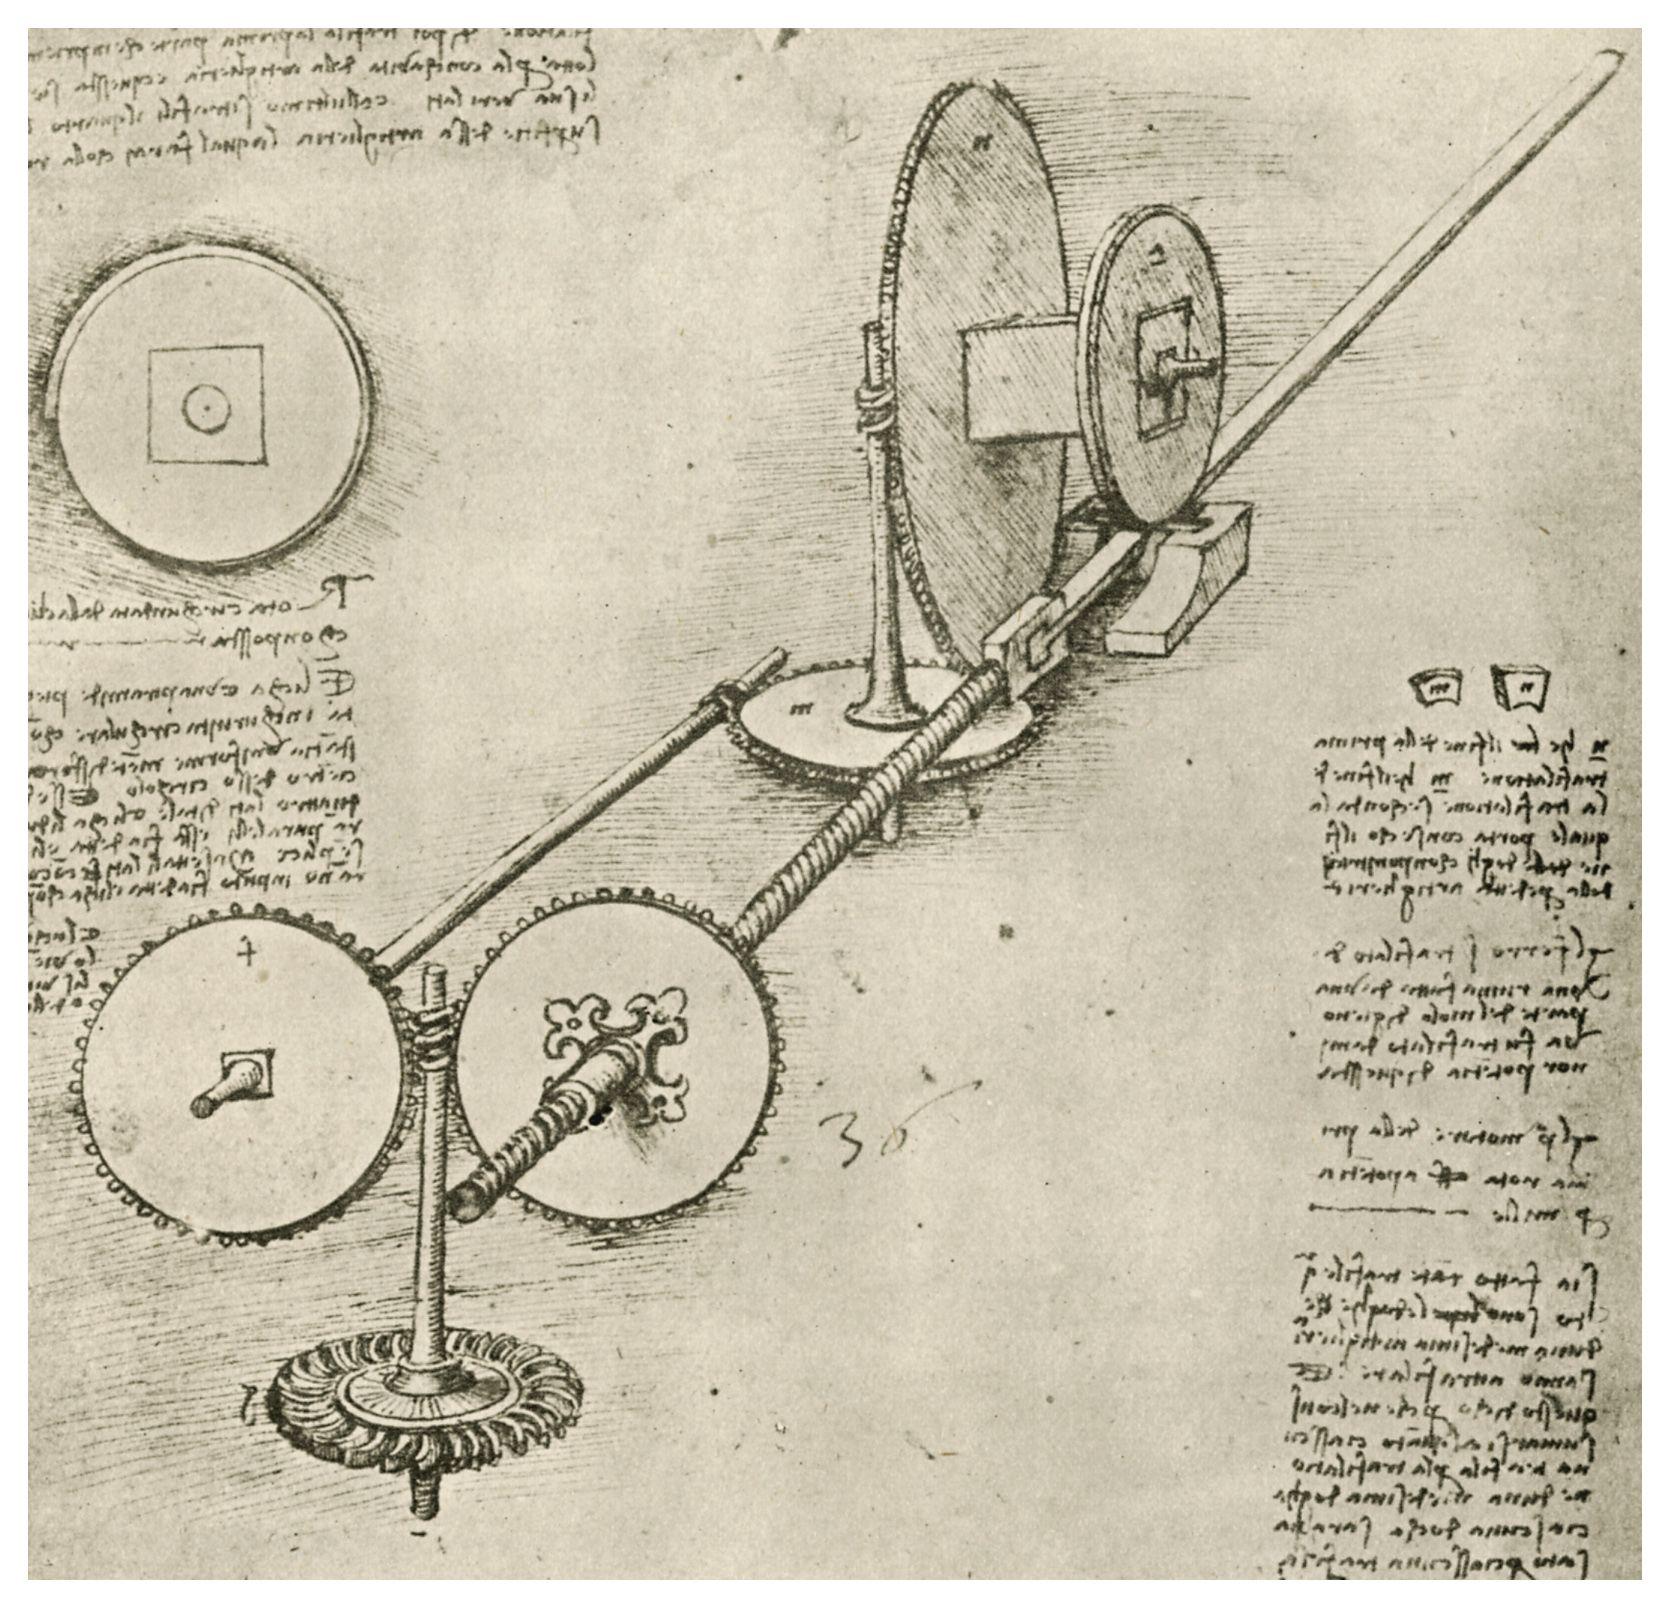 Leonardo da Vinci Drawings Image 41. hdwallpaper